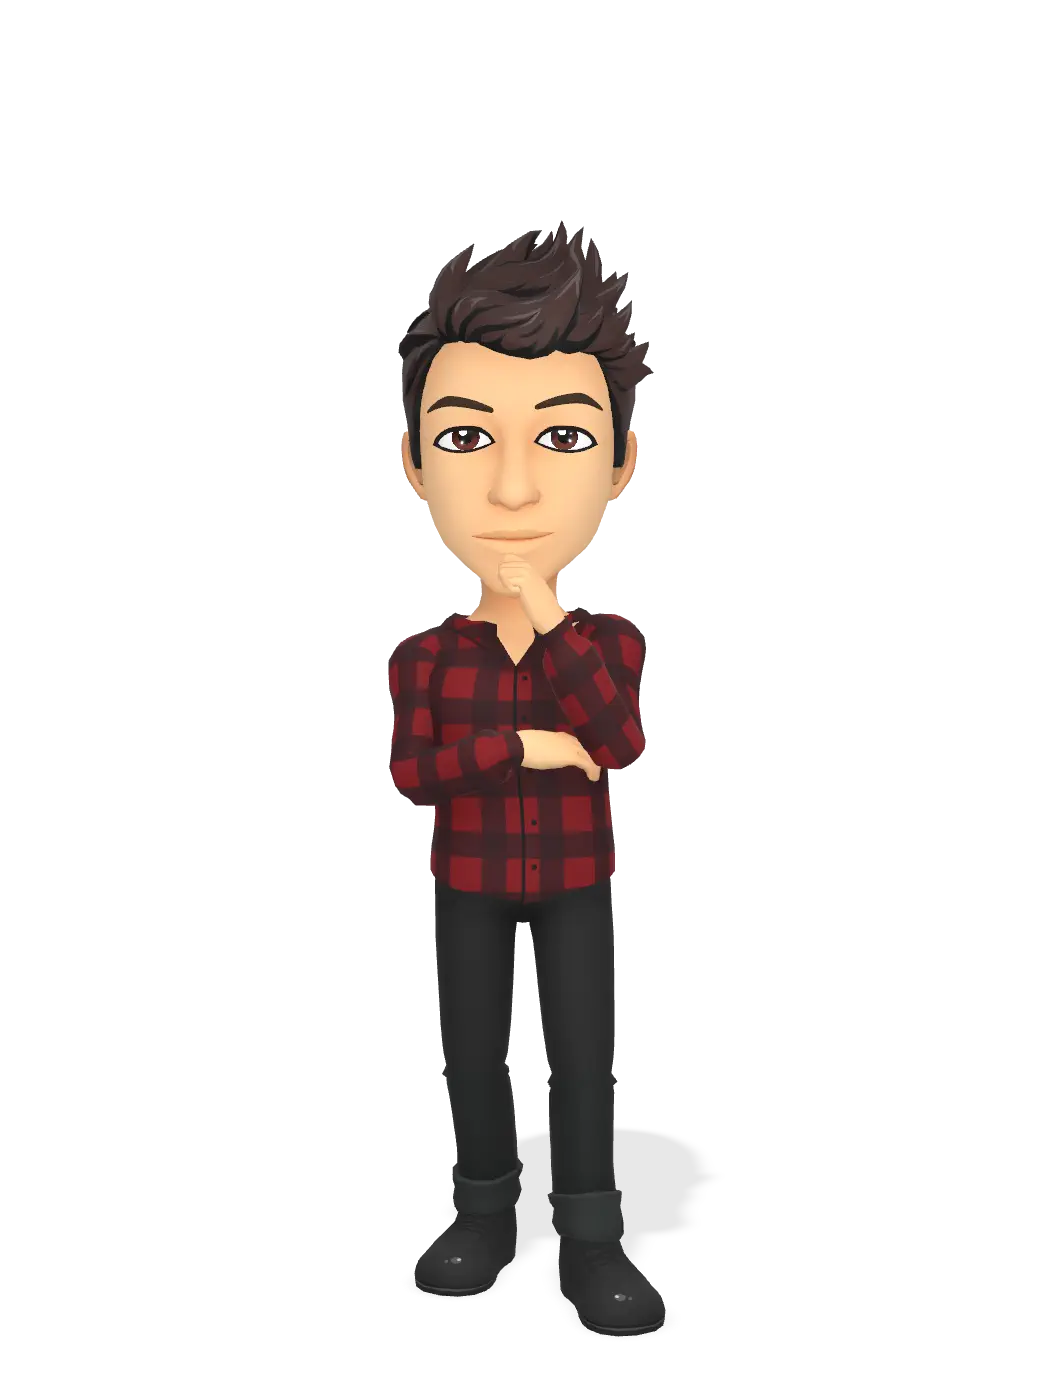 3D Bitmoji for jaredforthmusic avatar